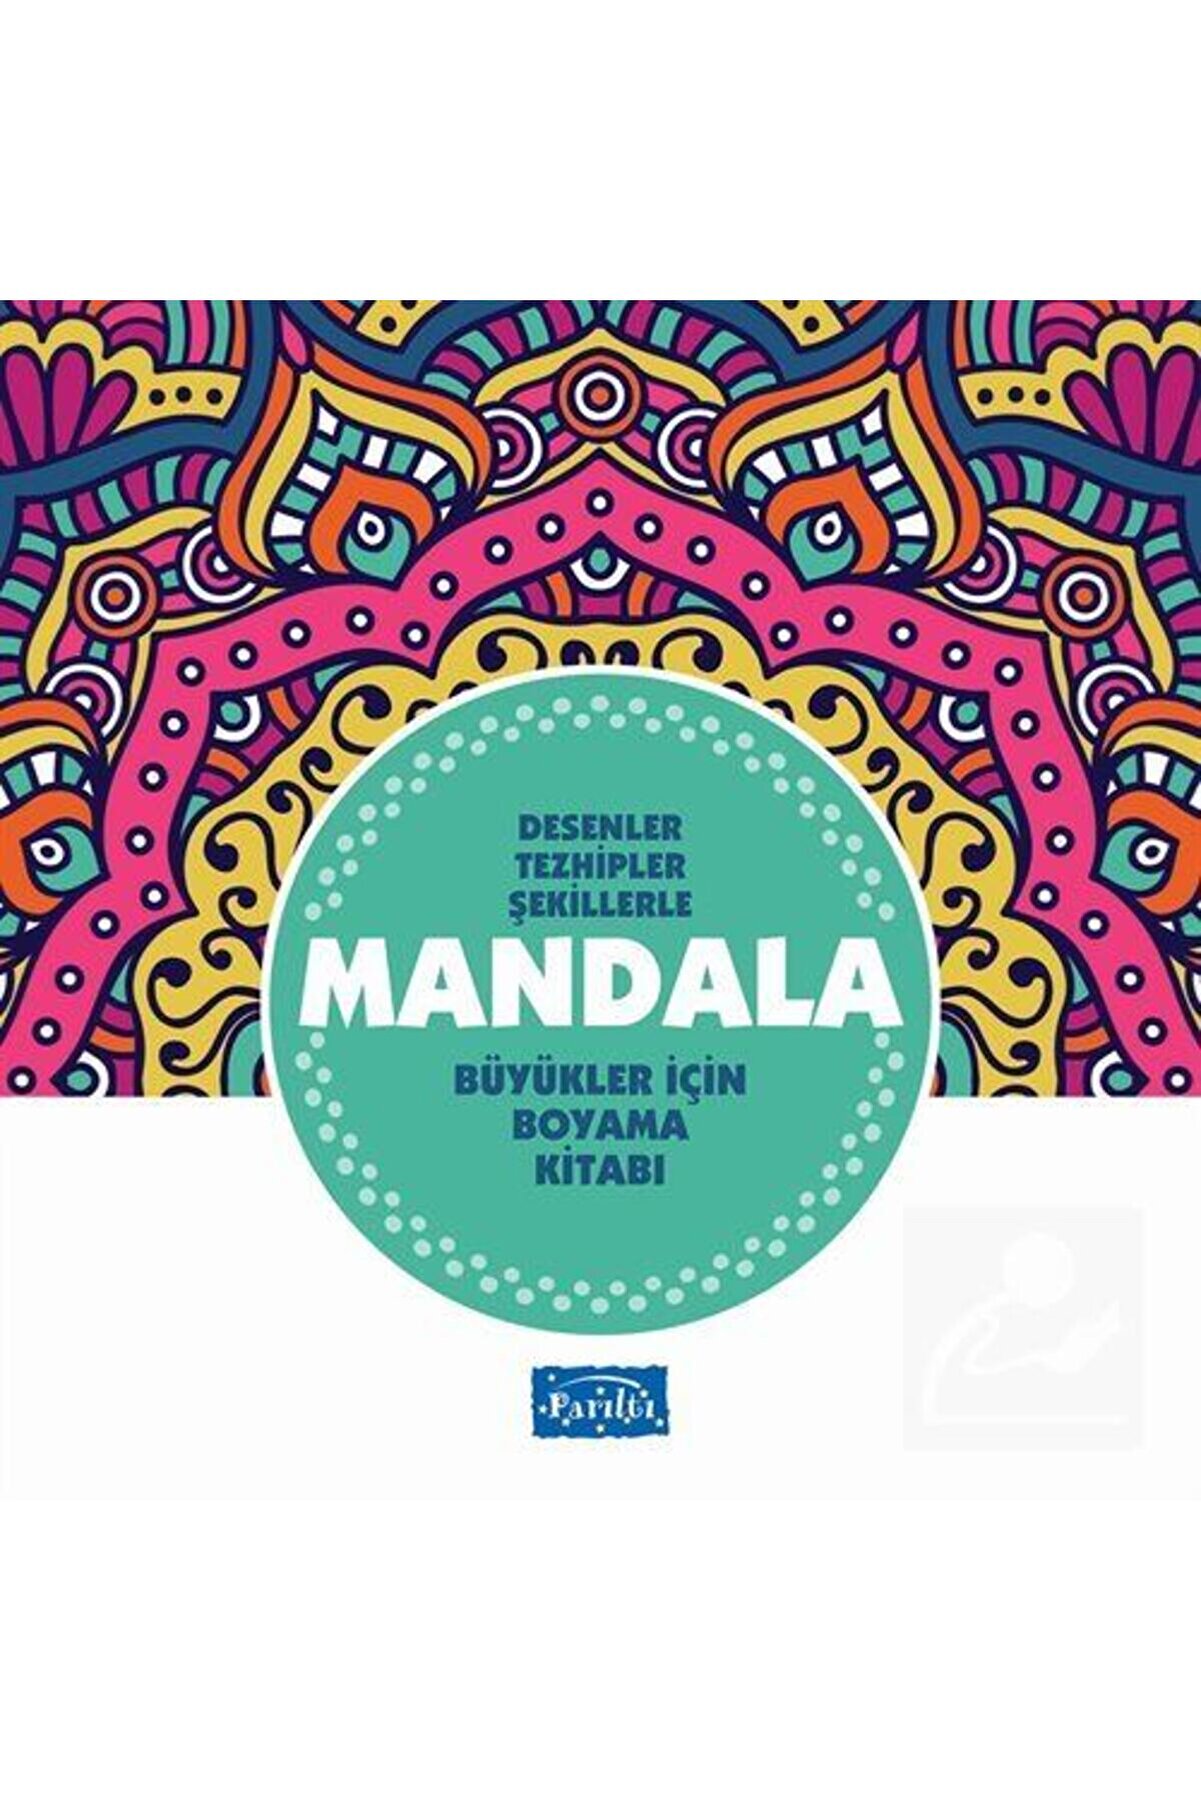 Parıltı Yayıncılık Mandala Büyükler Için Boyama (TURKUAZ KİTAP) & Desenler, Tezhipler, Şekillerle